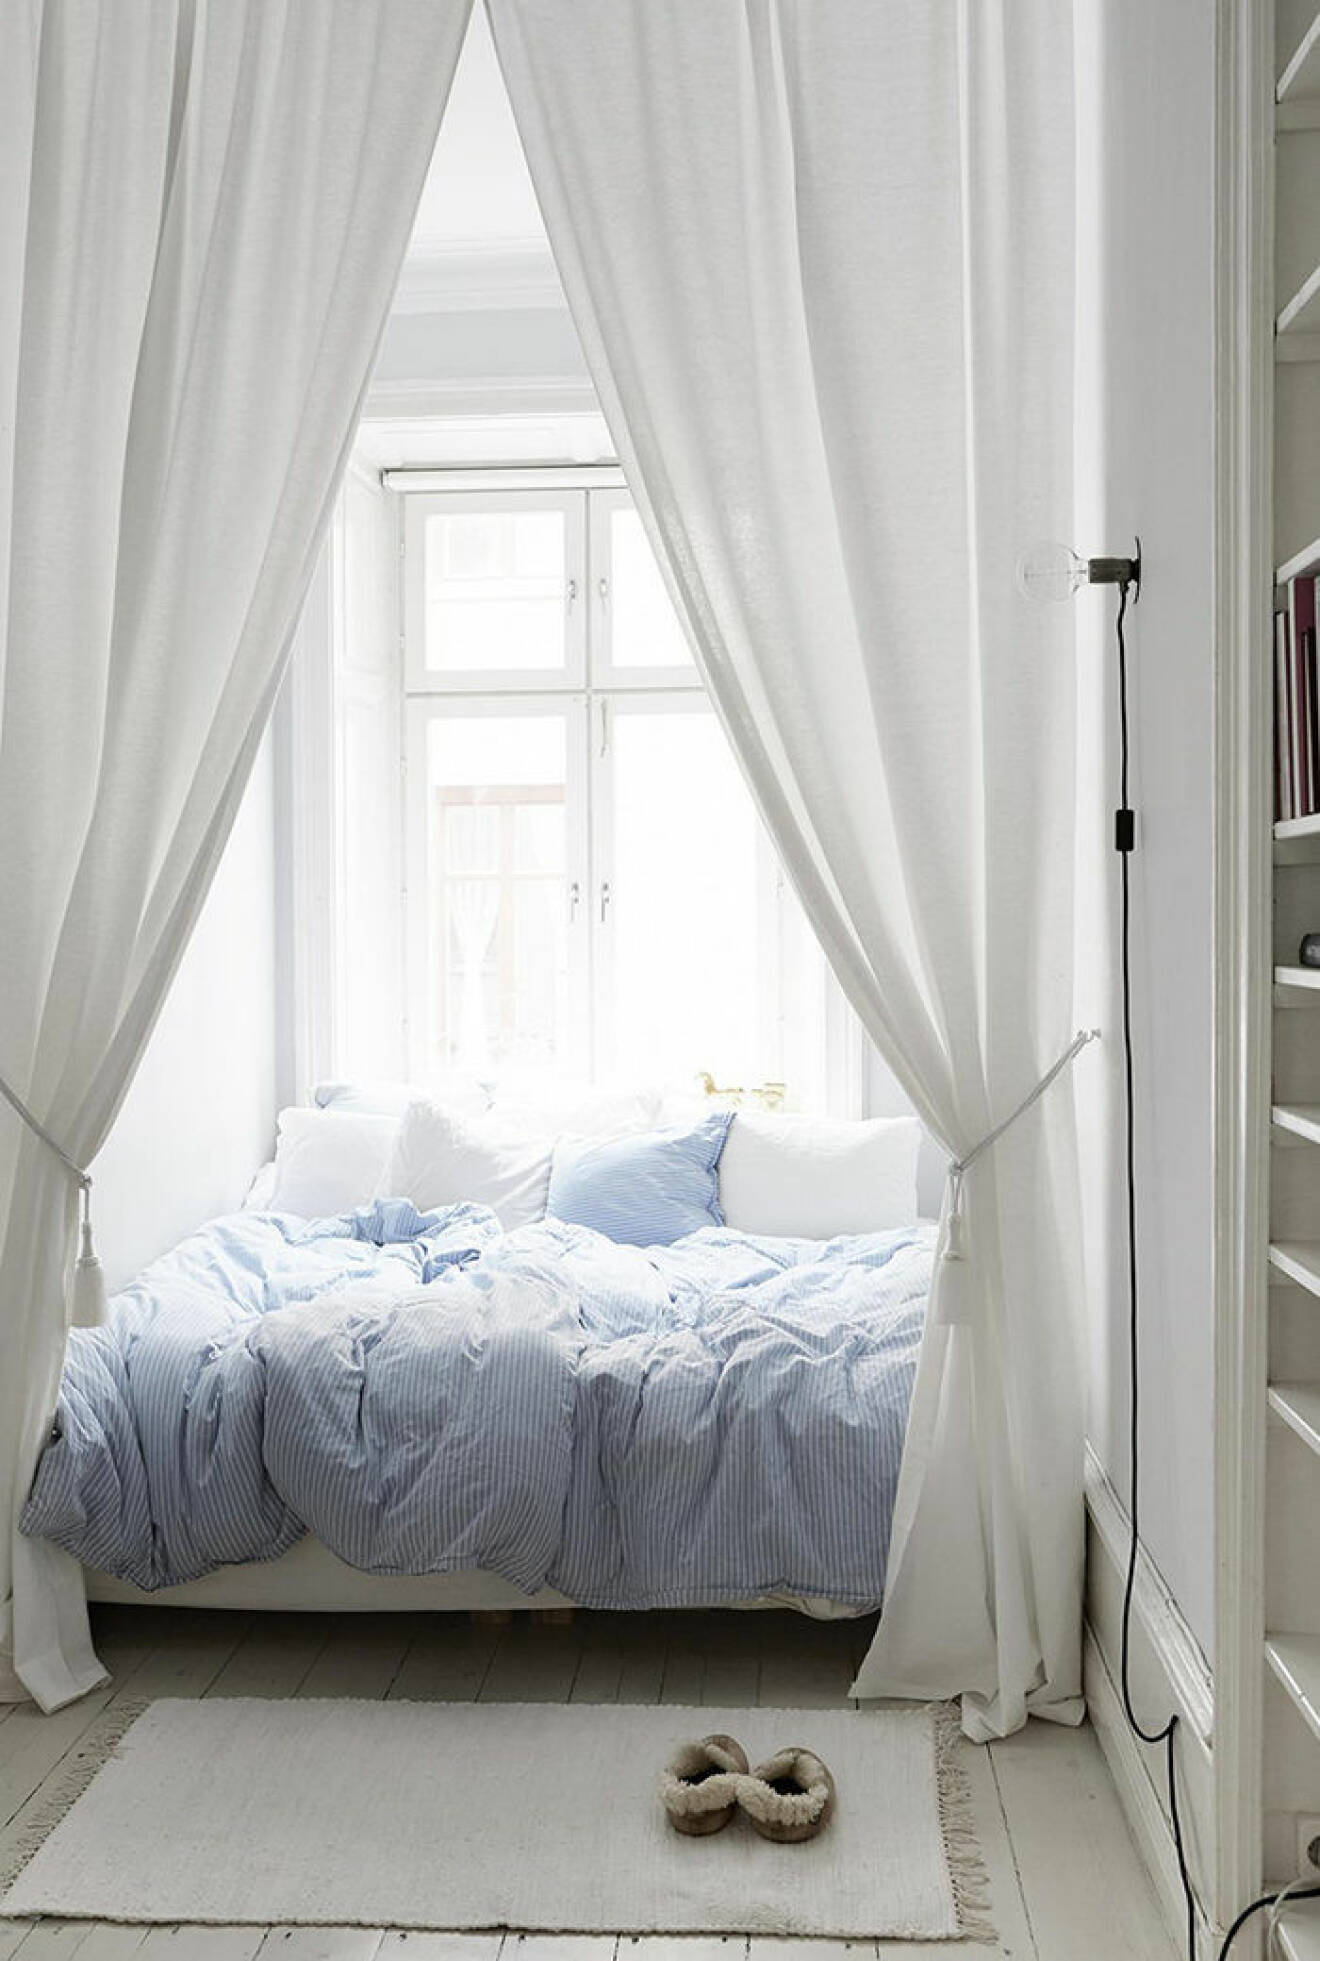 Stilren sänghimmel för sovalkov, gardinform.